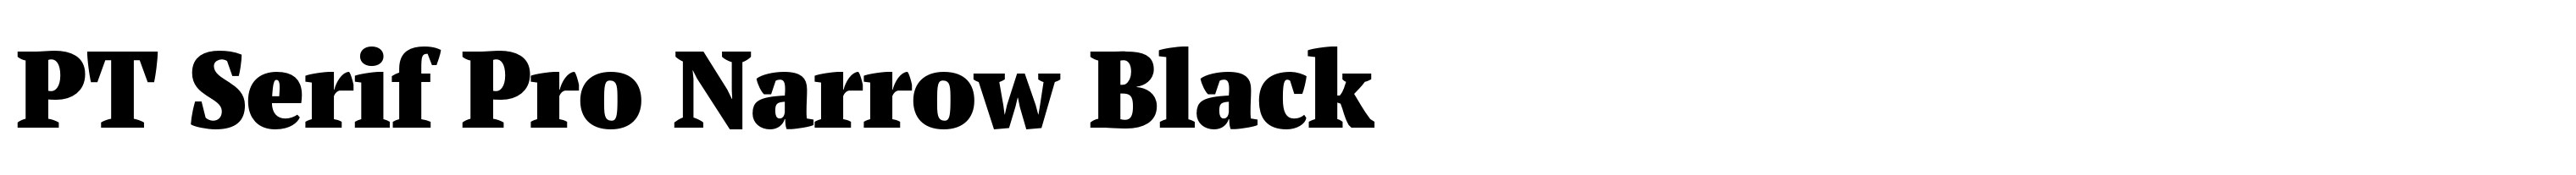 PT Serif Pro Narrow Black